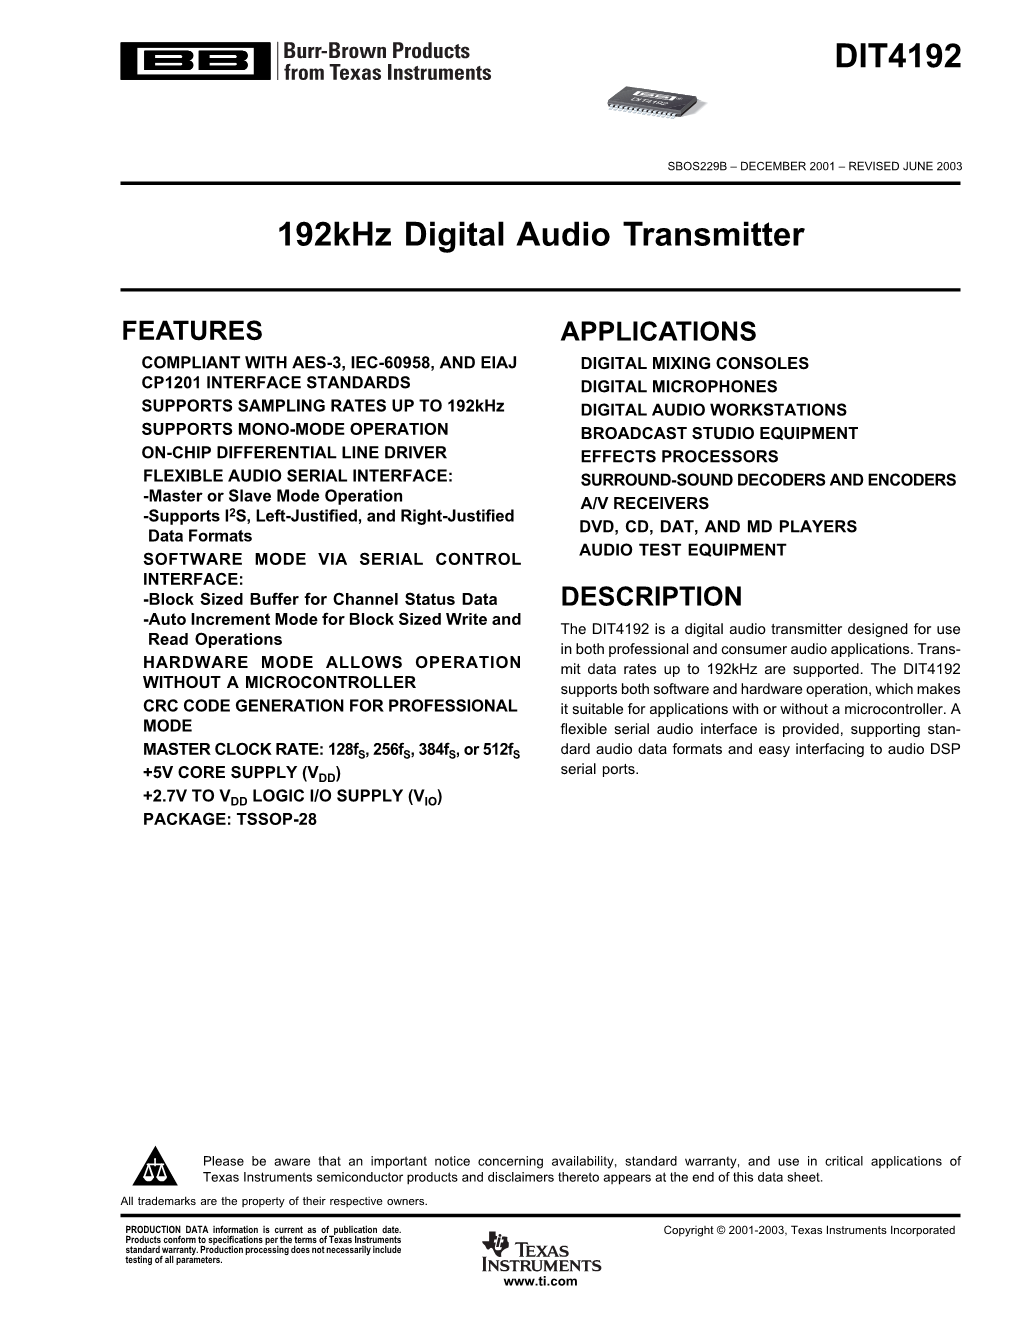 DIT4192: 192Khz Digital Audio Transmitter Datasheet